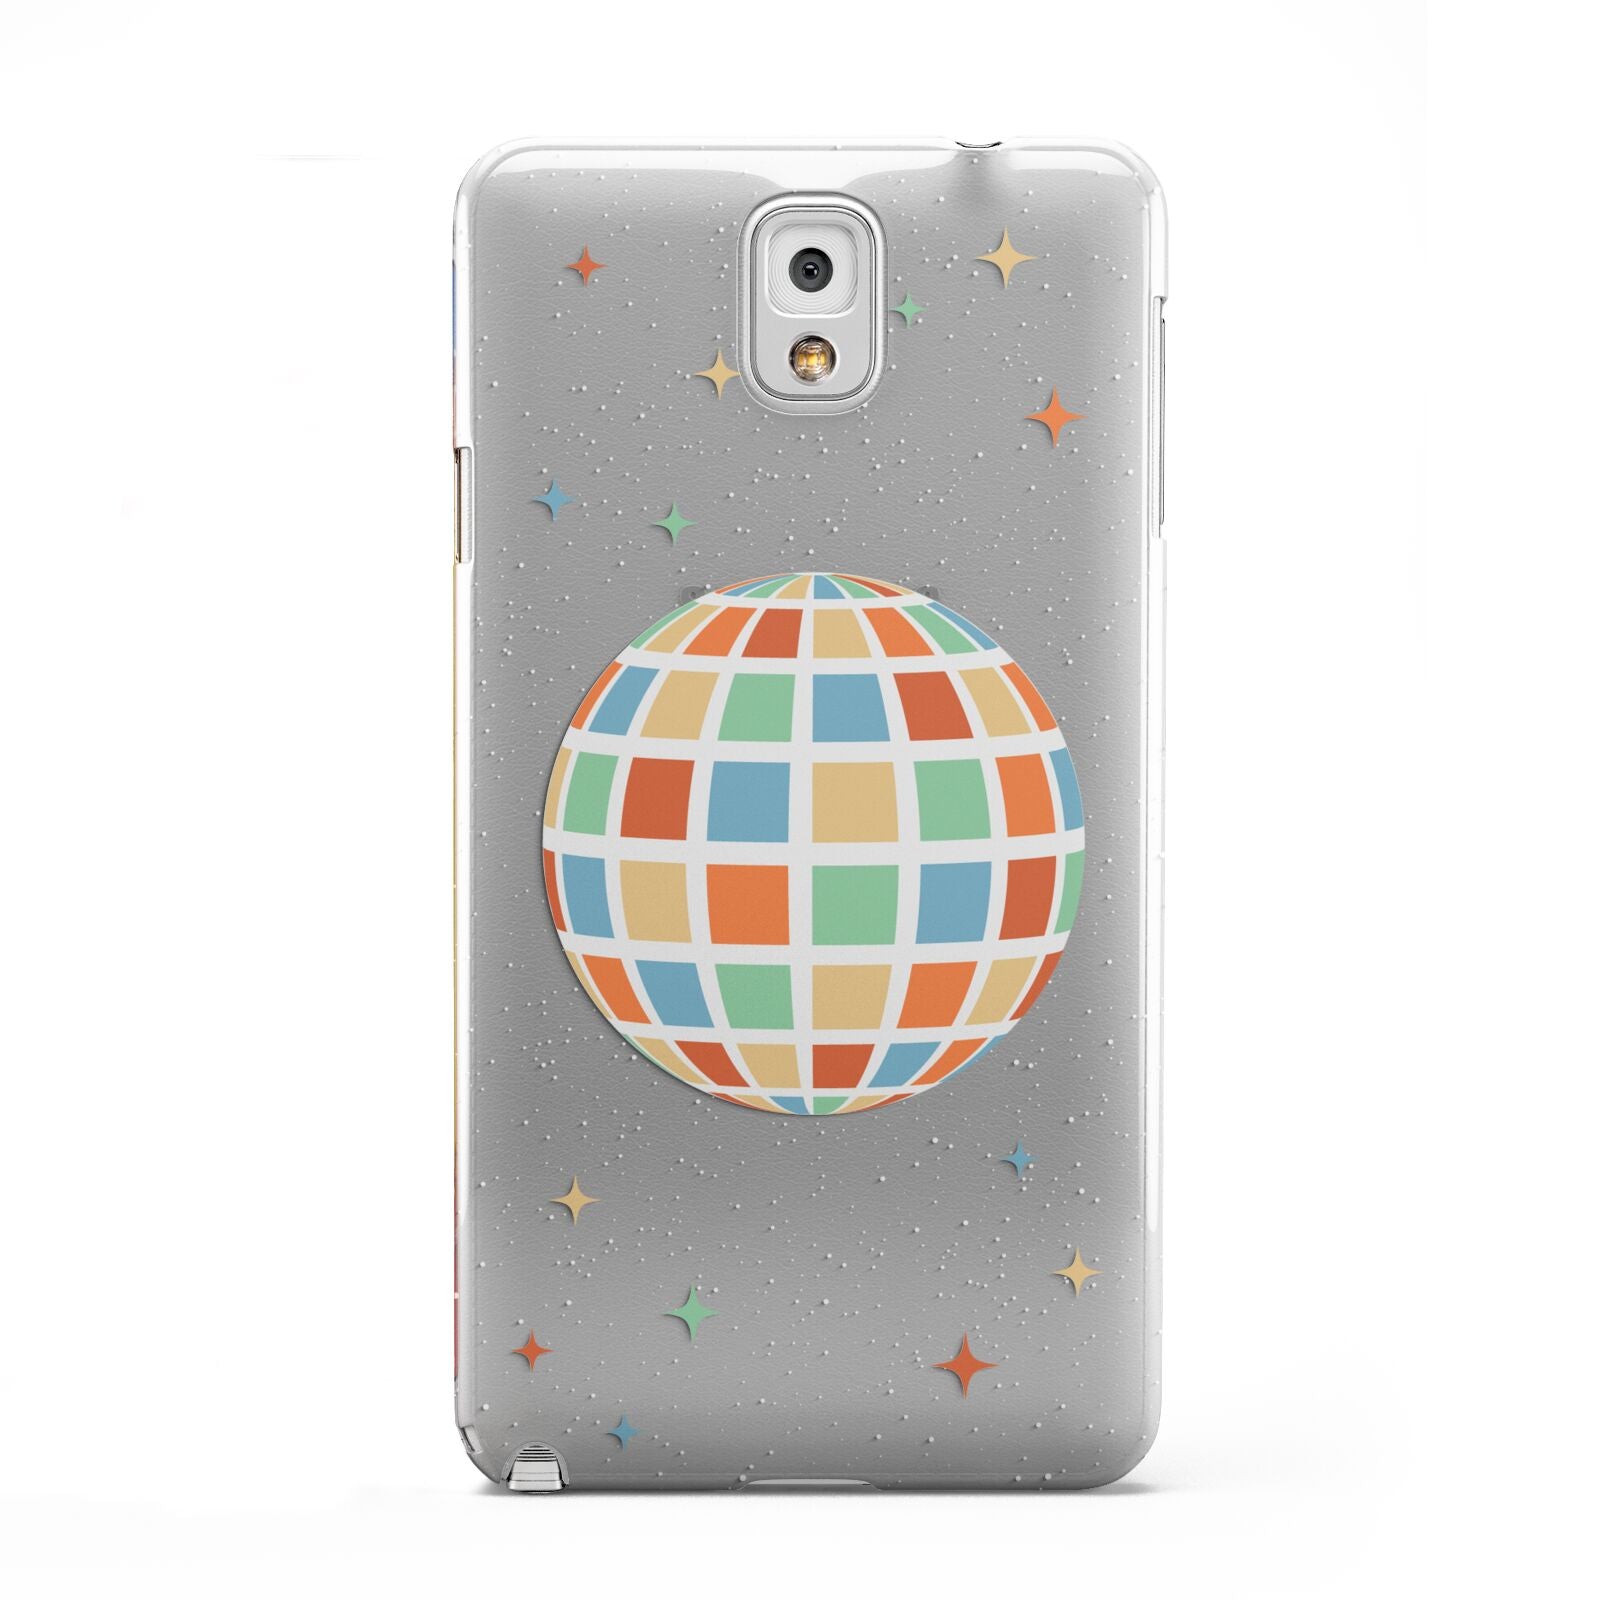 Disco Ball Samsung Galaxy Note 3 Case